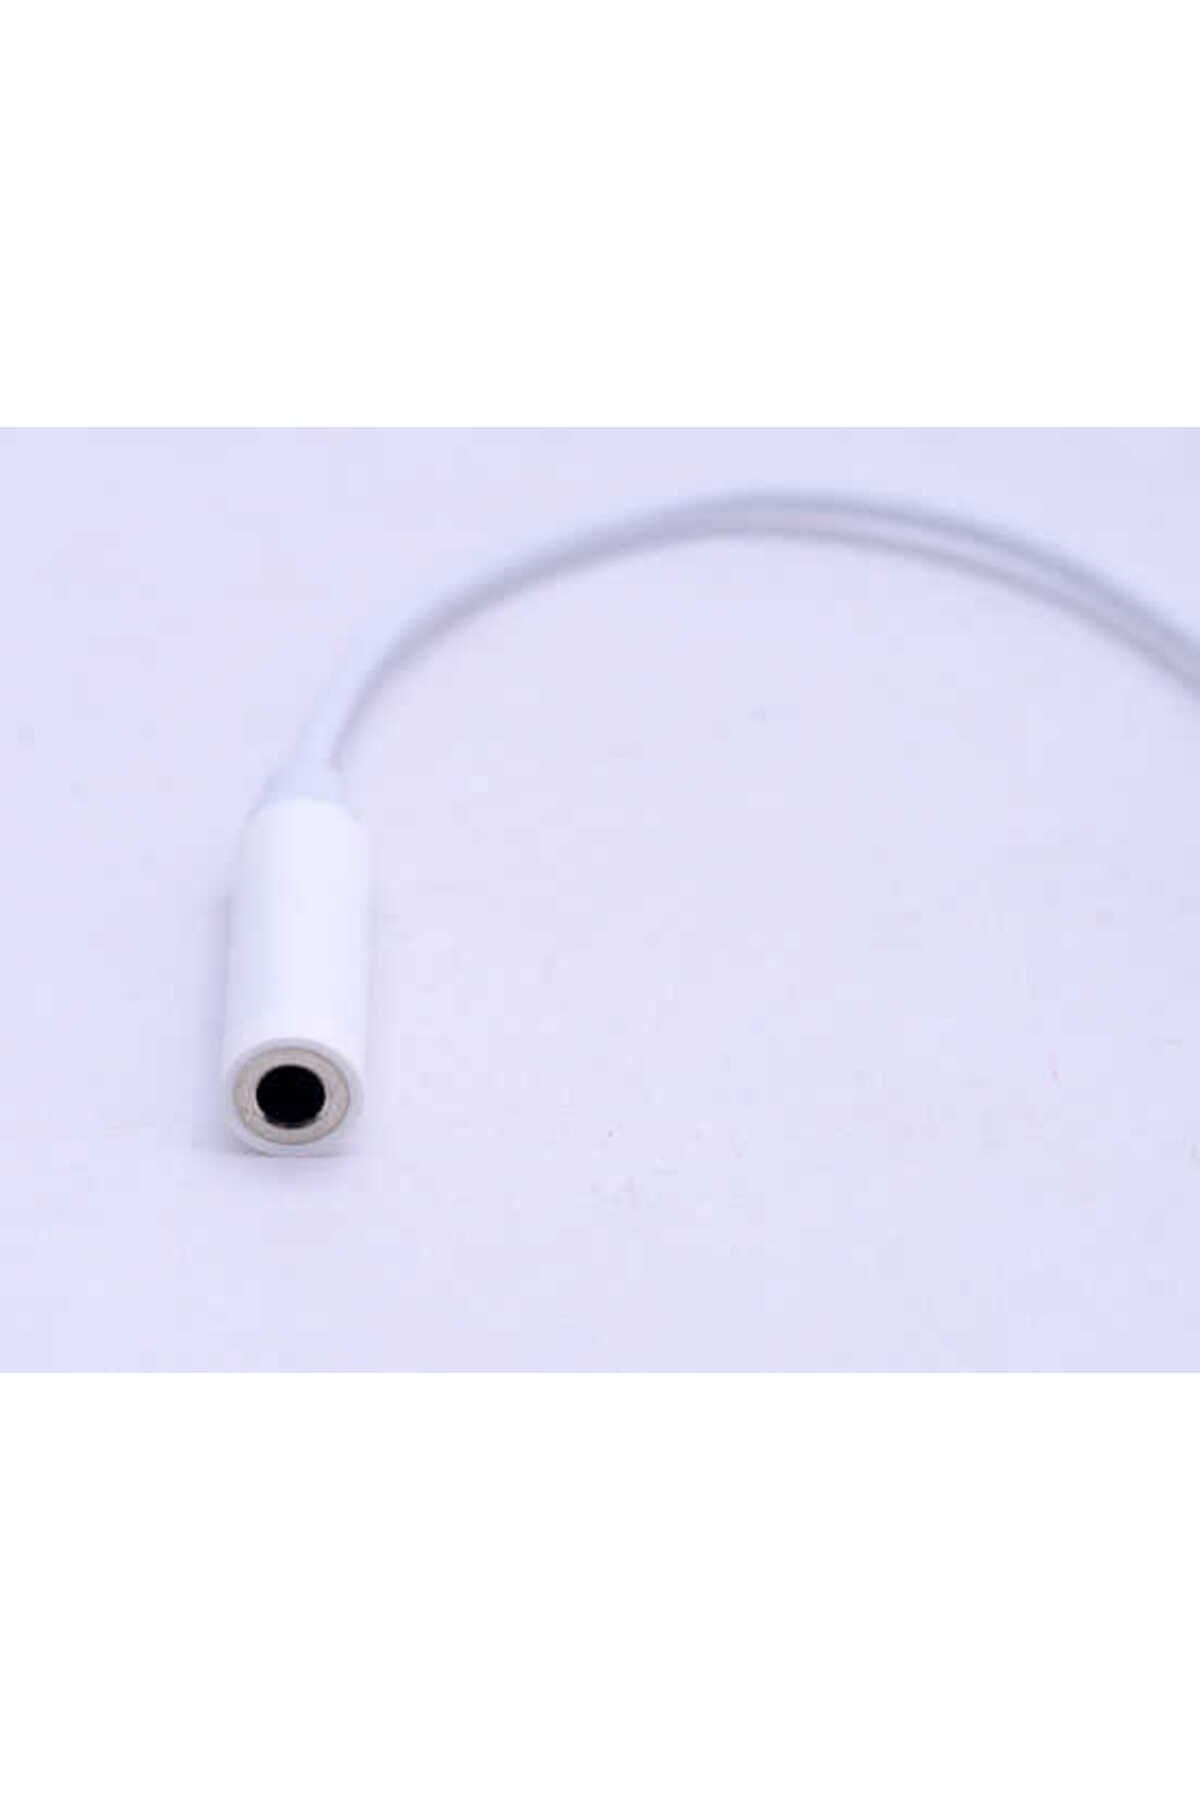 Zore Apple iPhone Kulaklık Çevirici 25cm